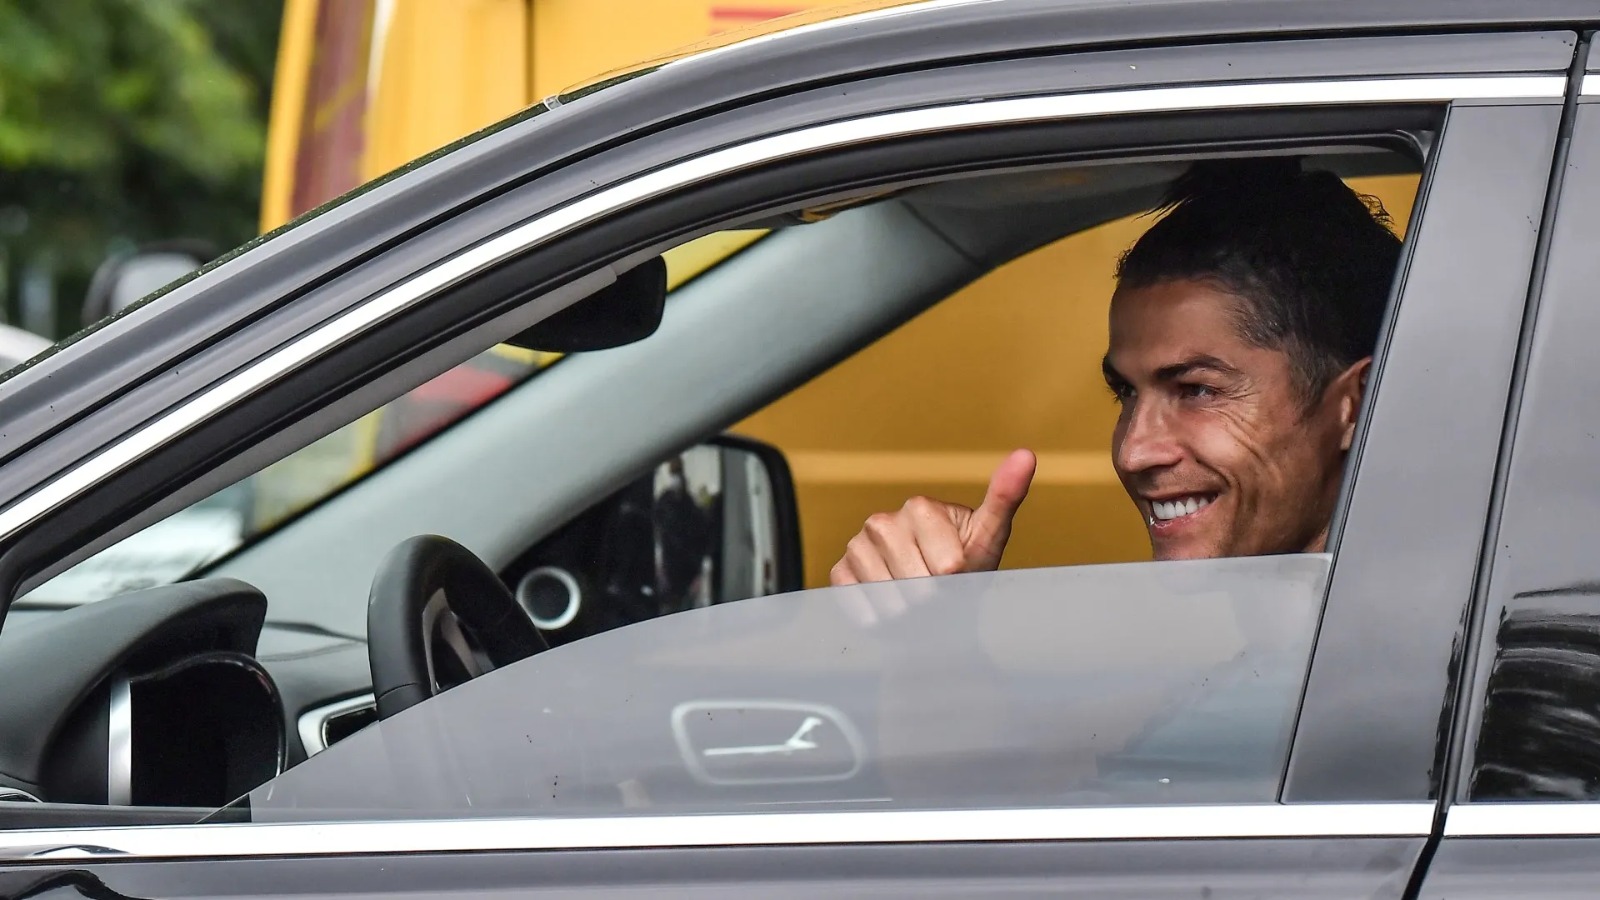 Ronaldo'nun bu arabasındandan dünyada sadece 10 kişide var. Görünce şaşıracaksınız